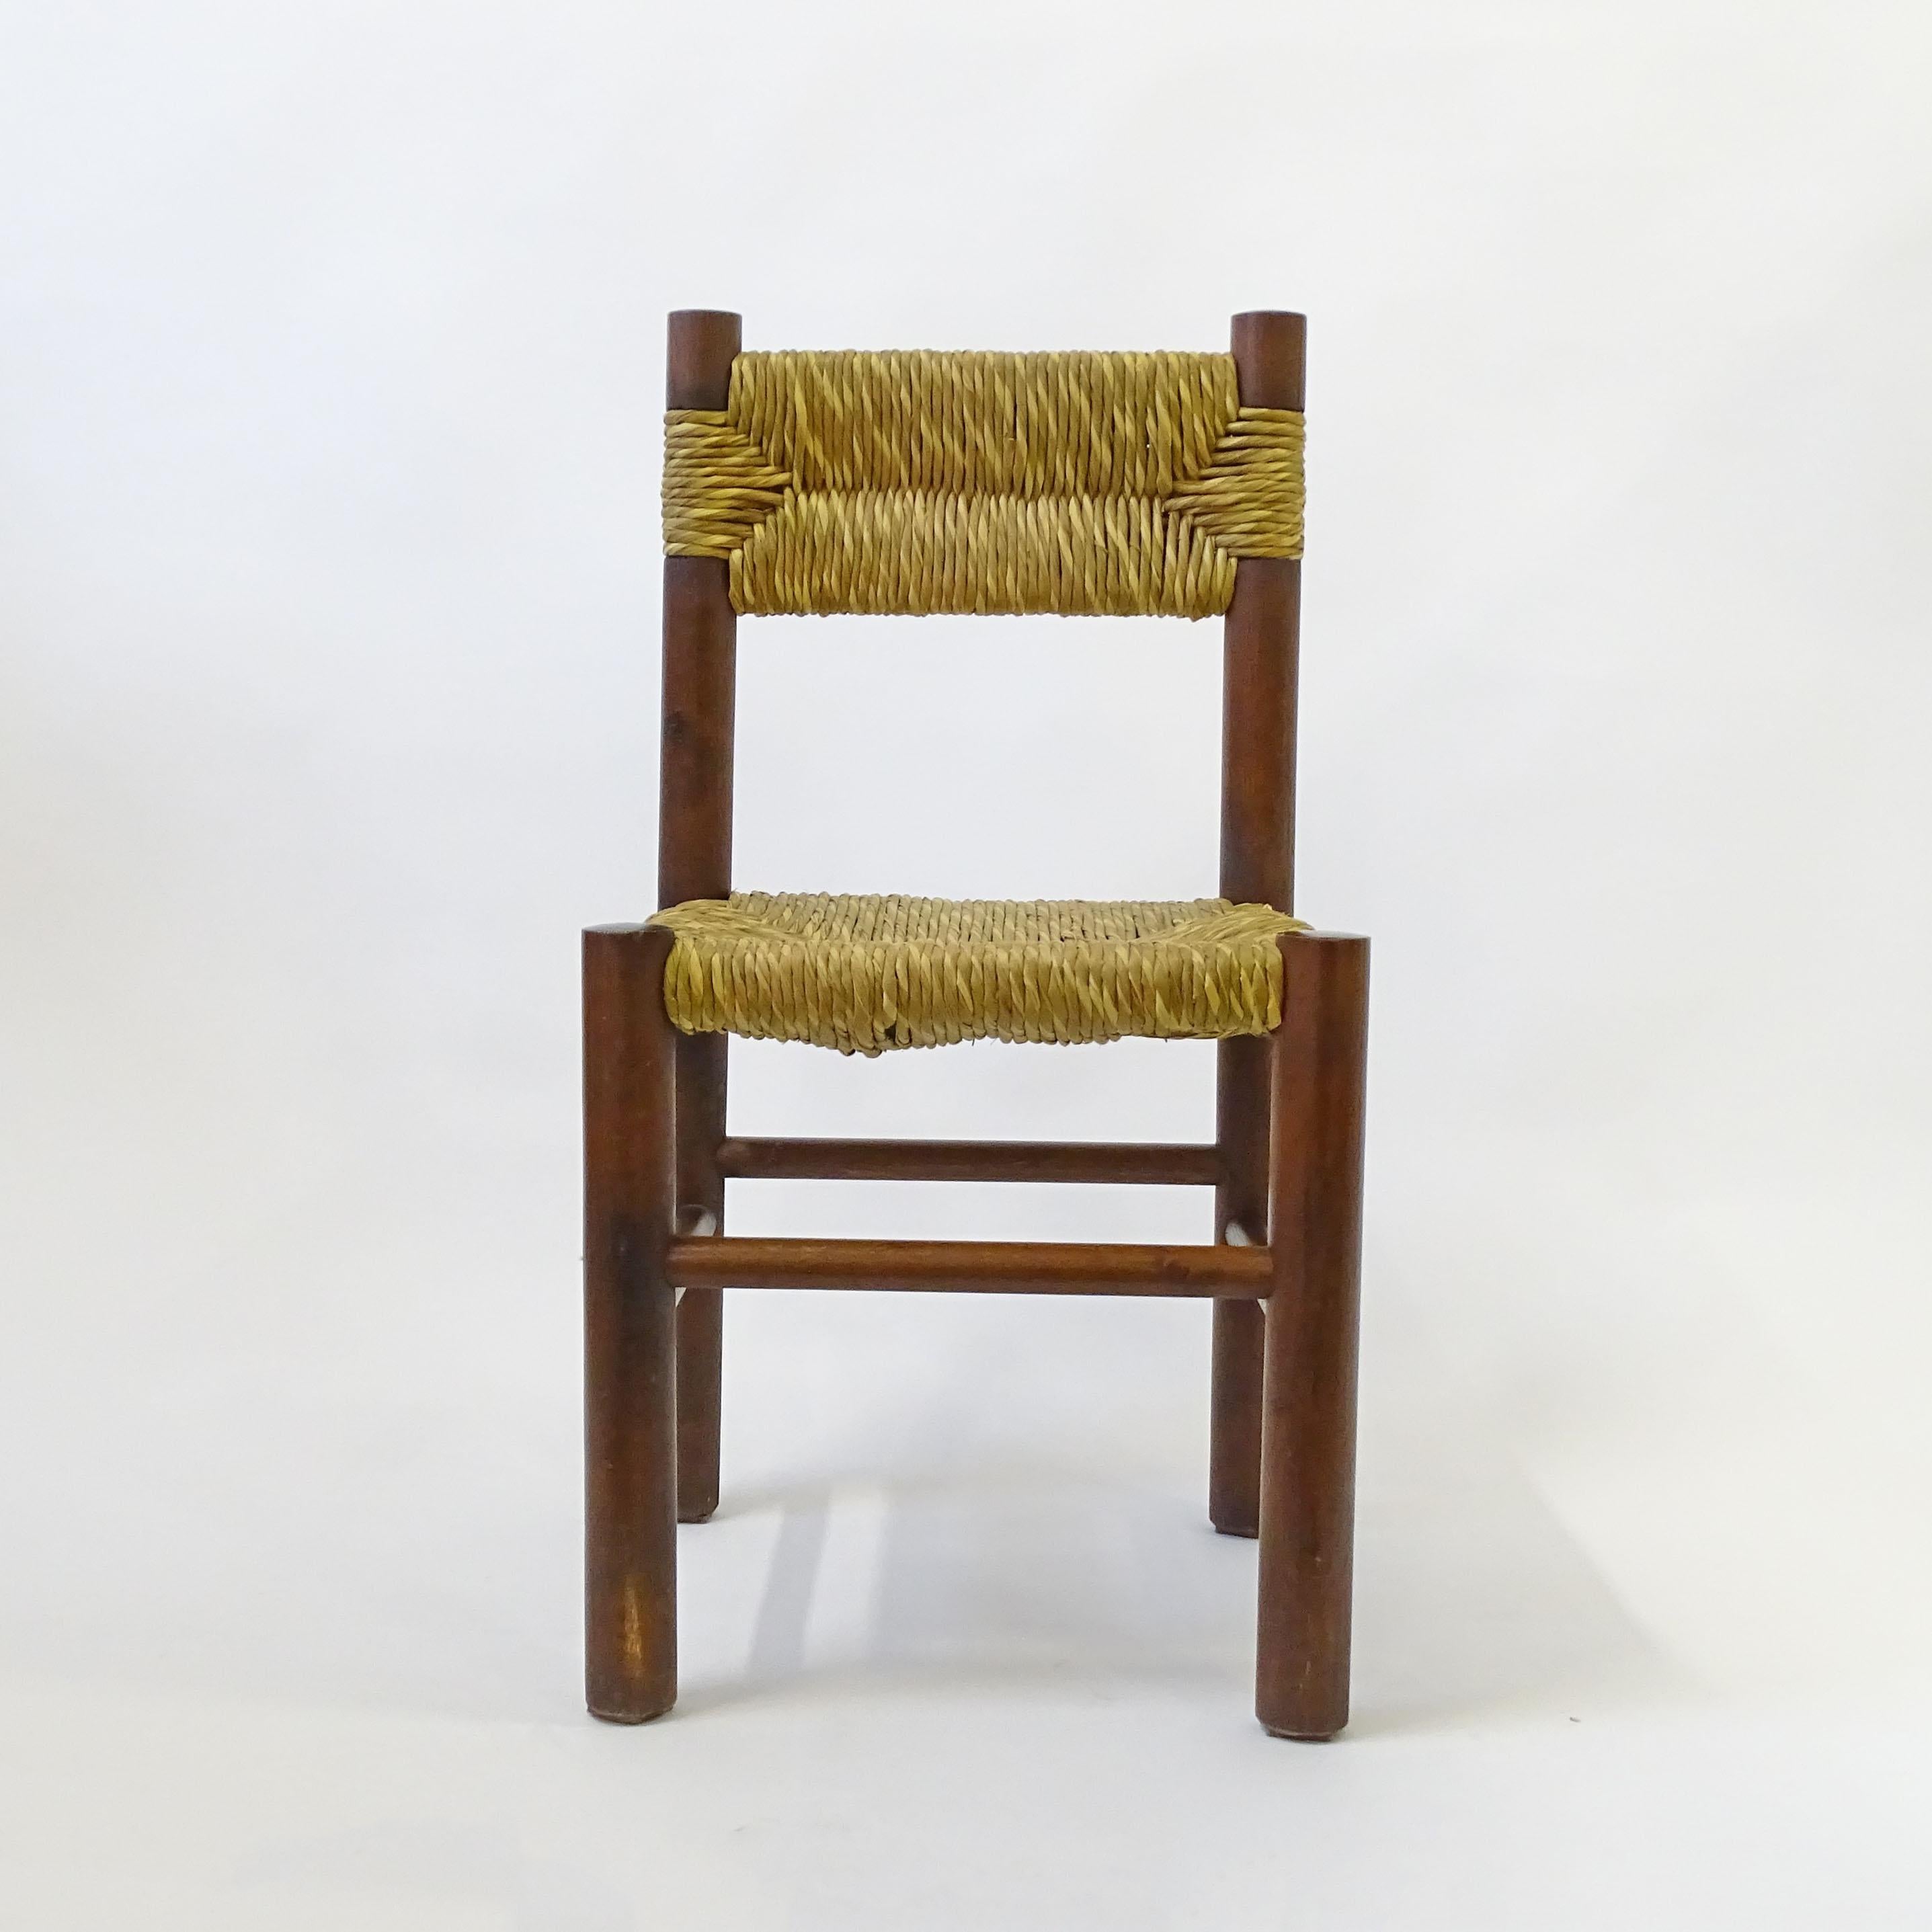 Ein prächtiger Satz von acht rustikalen italienischen Esszimmerstühlen aus Stroh und Holz aus den 1960er Jahren im Stil von Charlotte Perriand.
